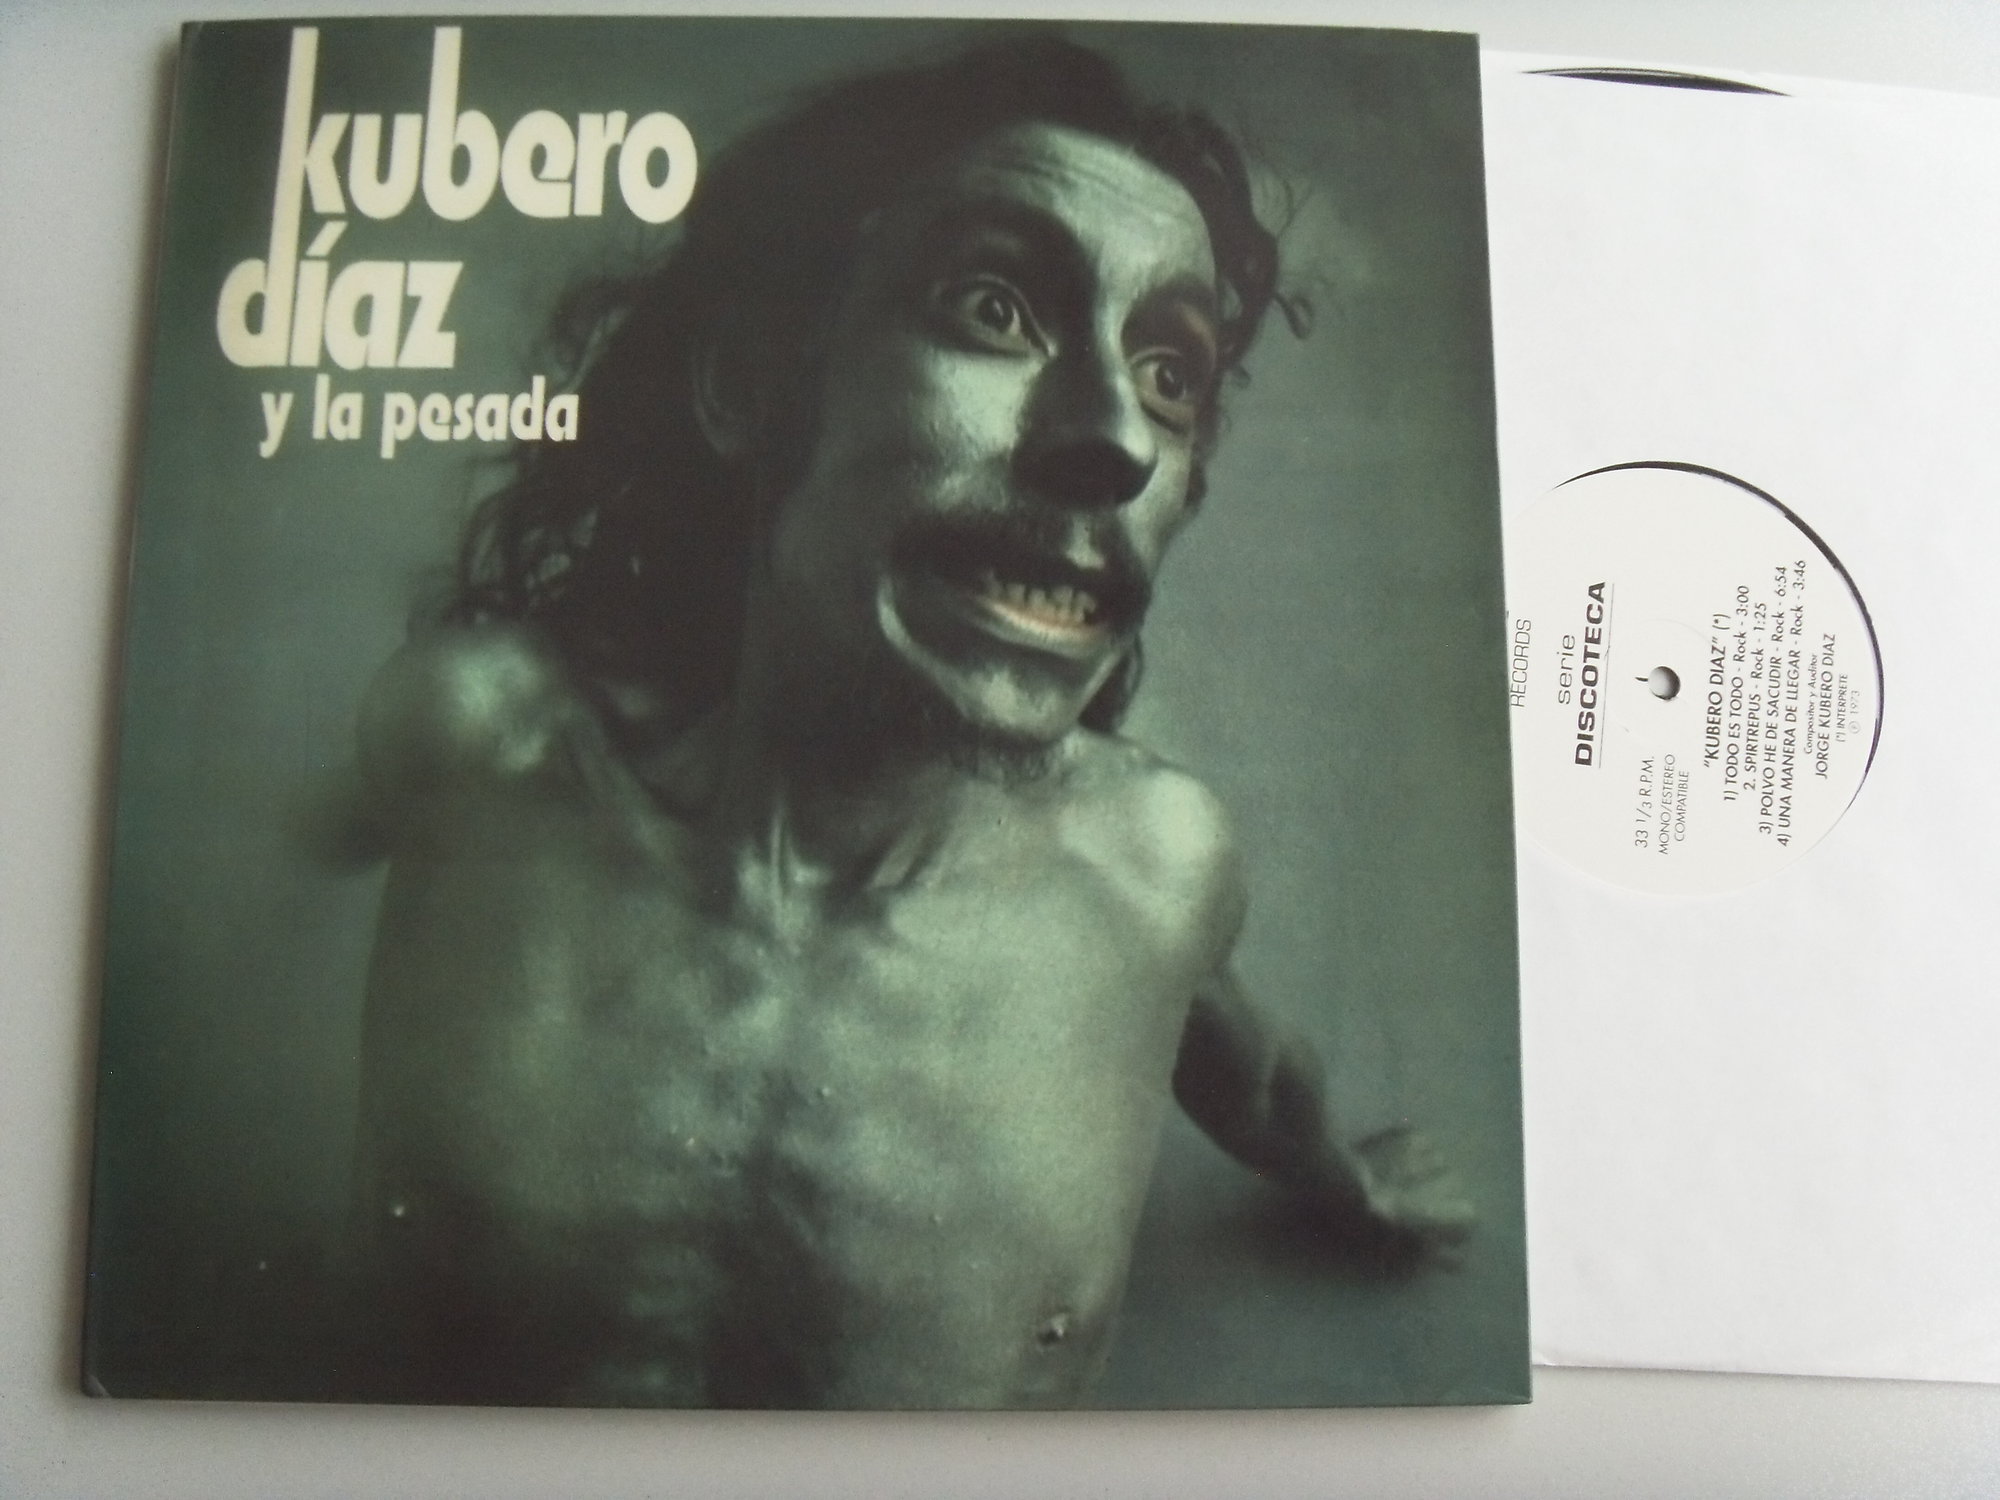 KUBERO DIAZ Kubero Diaz y la pesada